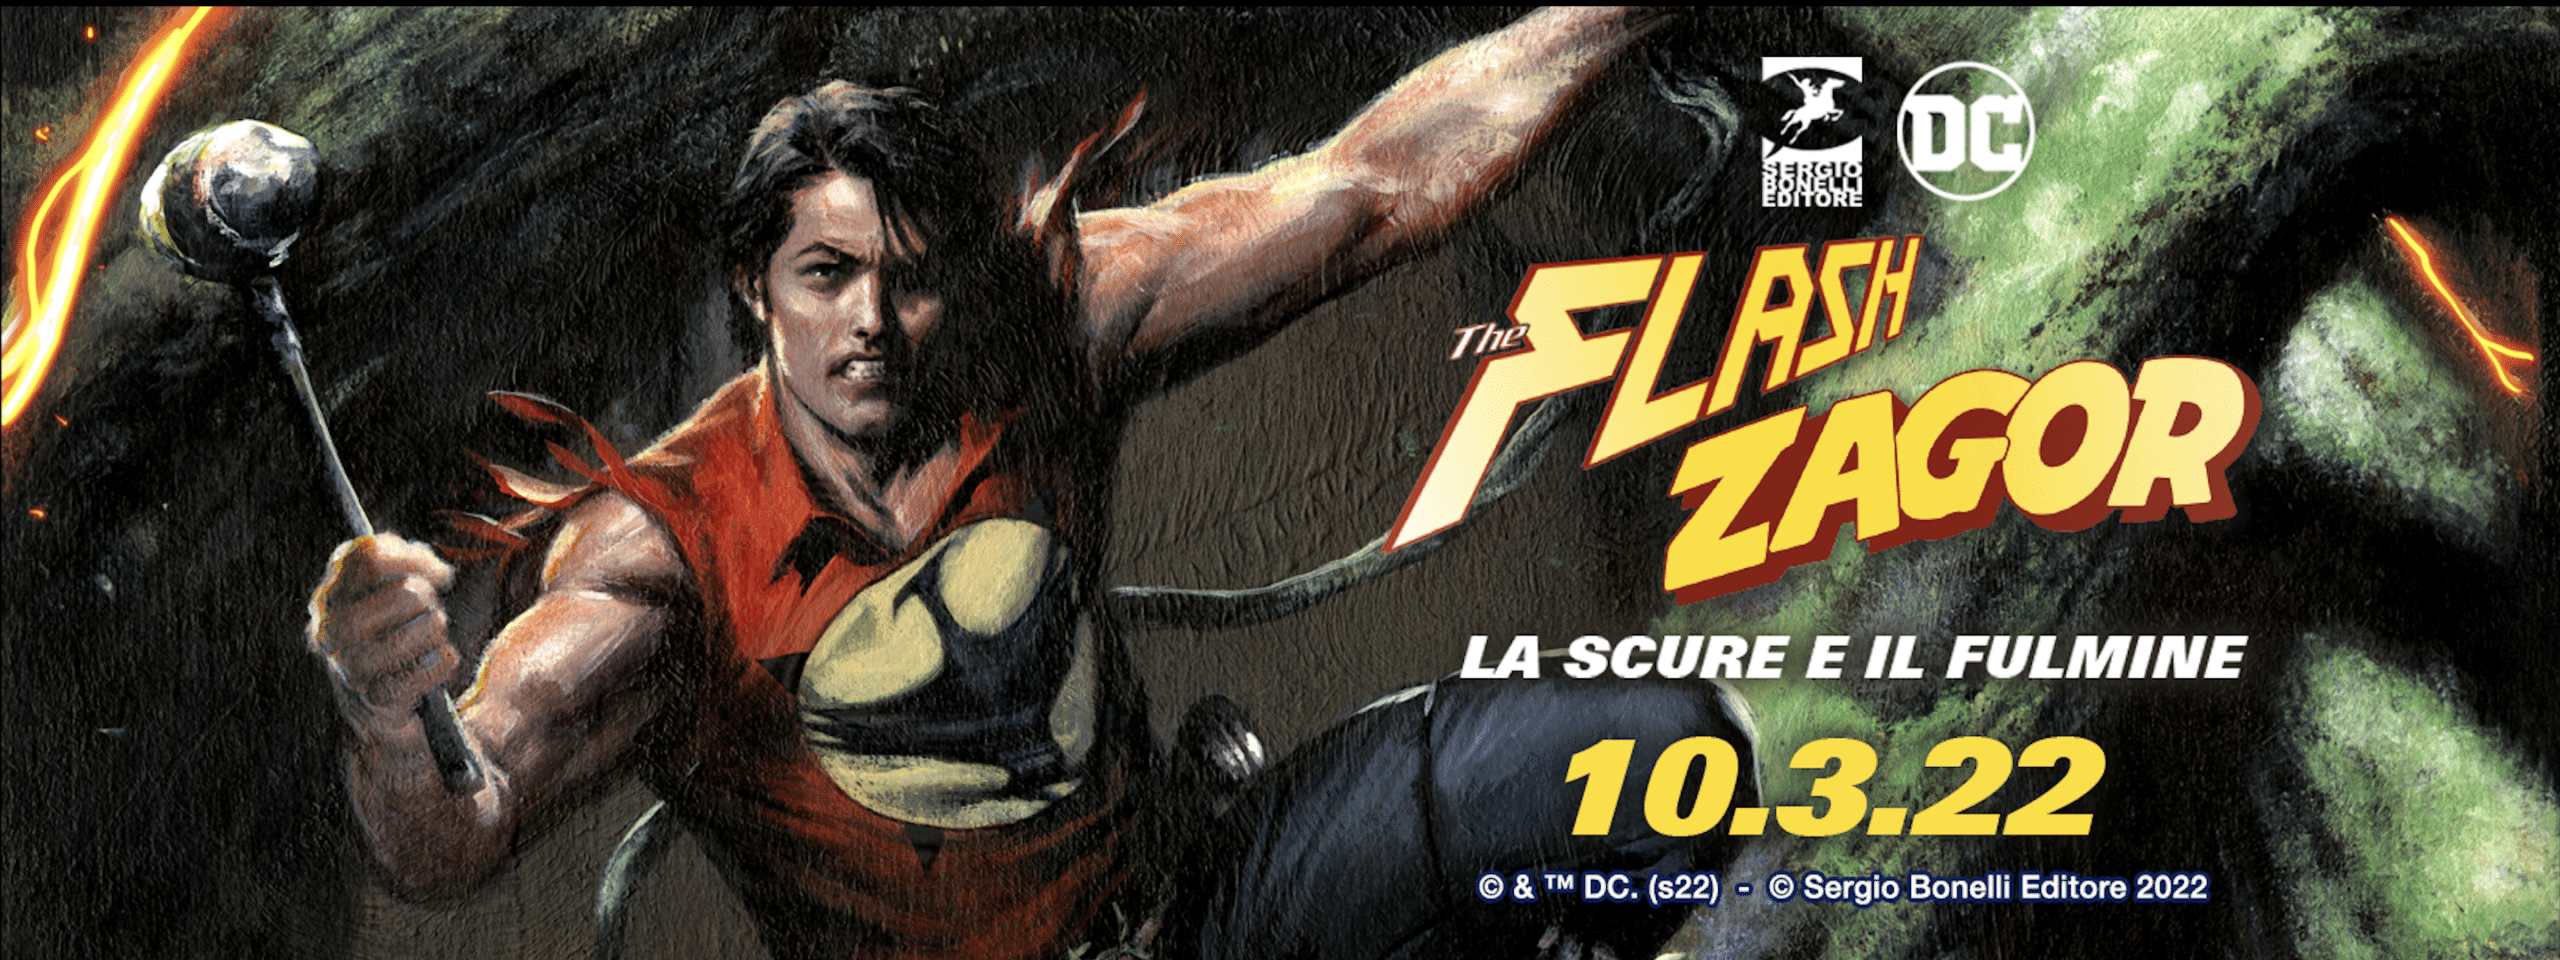 L’incontro tra Flash e Zagor  in un nuovo volume cartonato a colori thumbnail